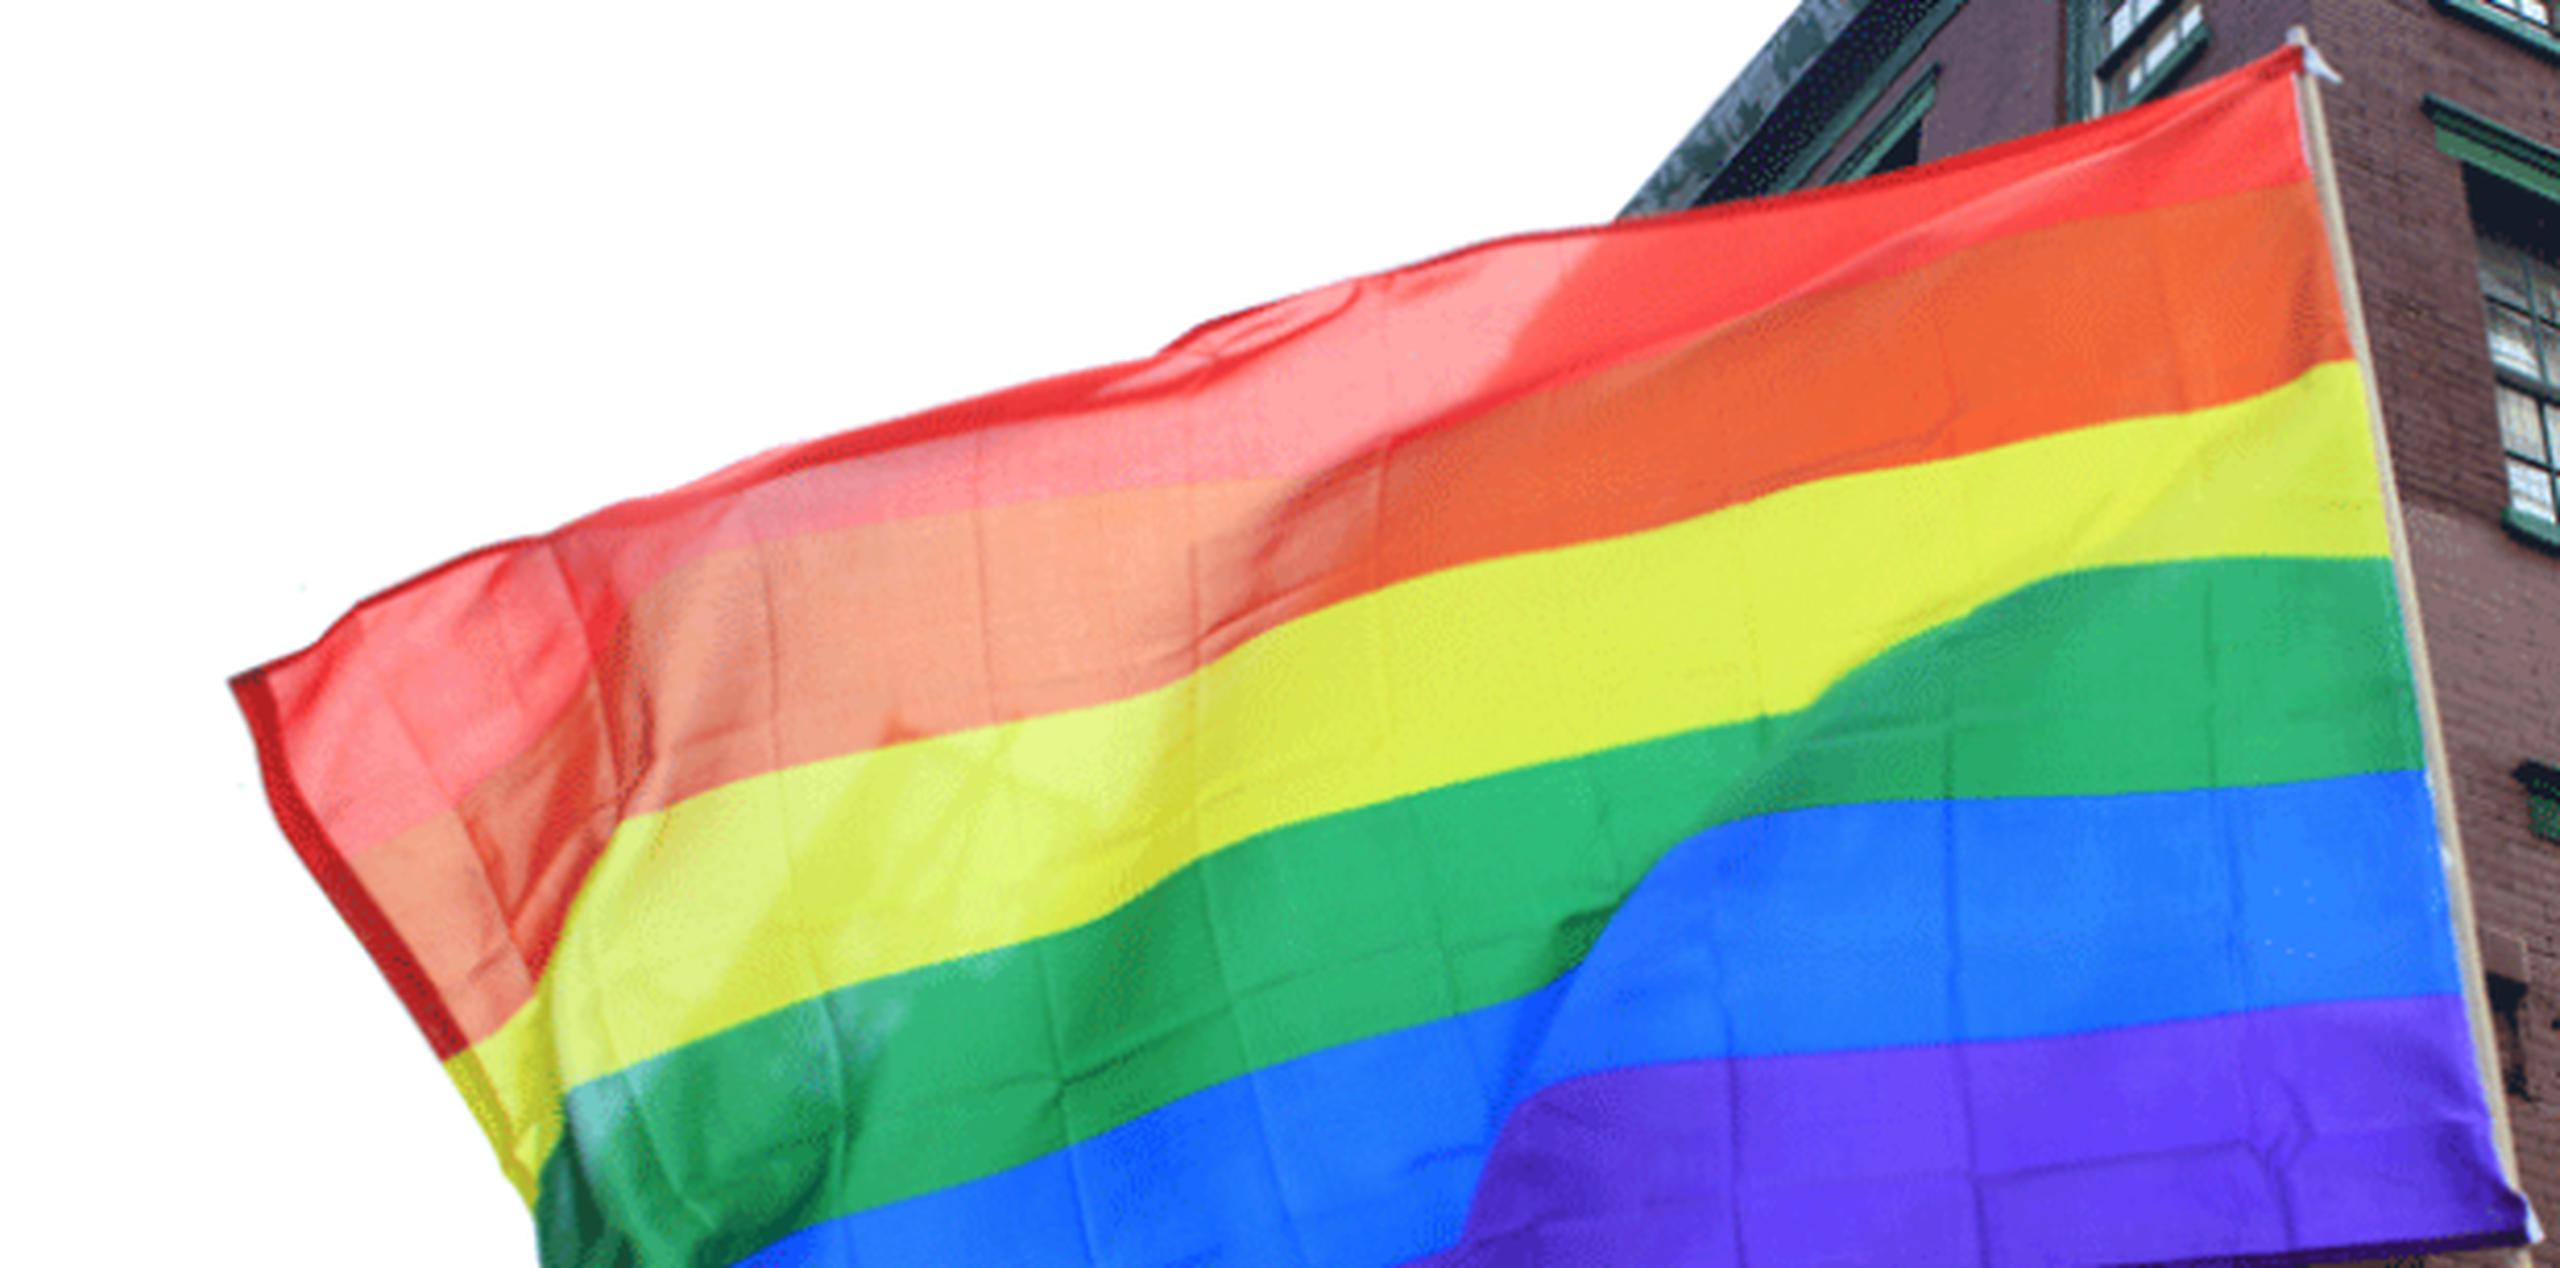 La Corte Suprema estatal ratificó su prohibición, a pesar de la orden de una corte federal de emitir licencias a gays y lesbianas. (Archivo)